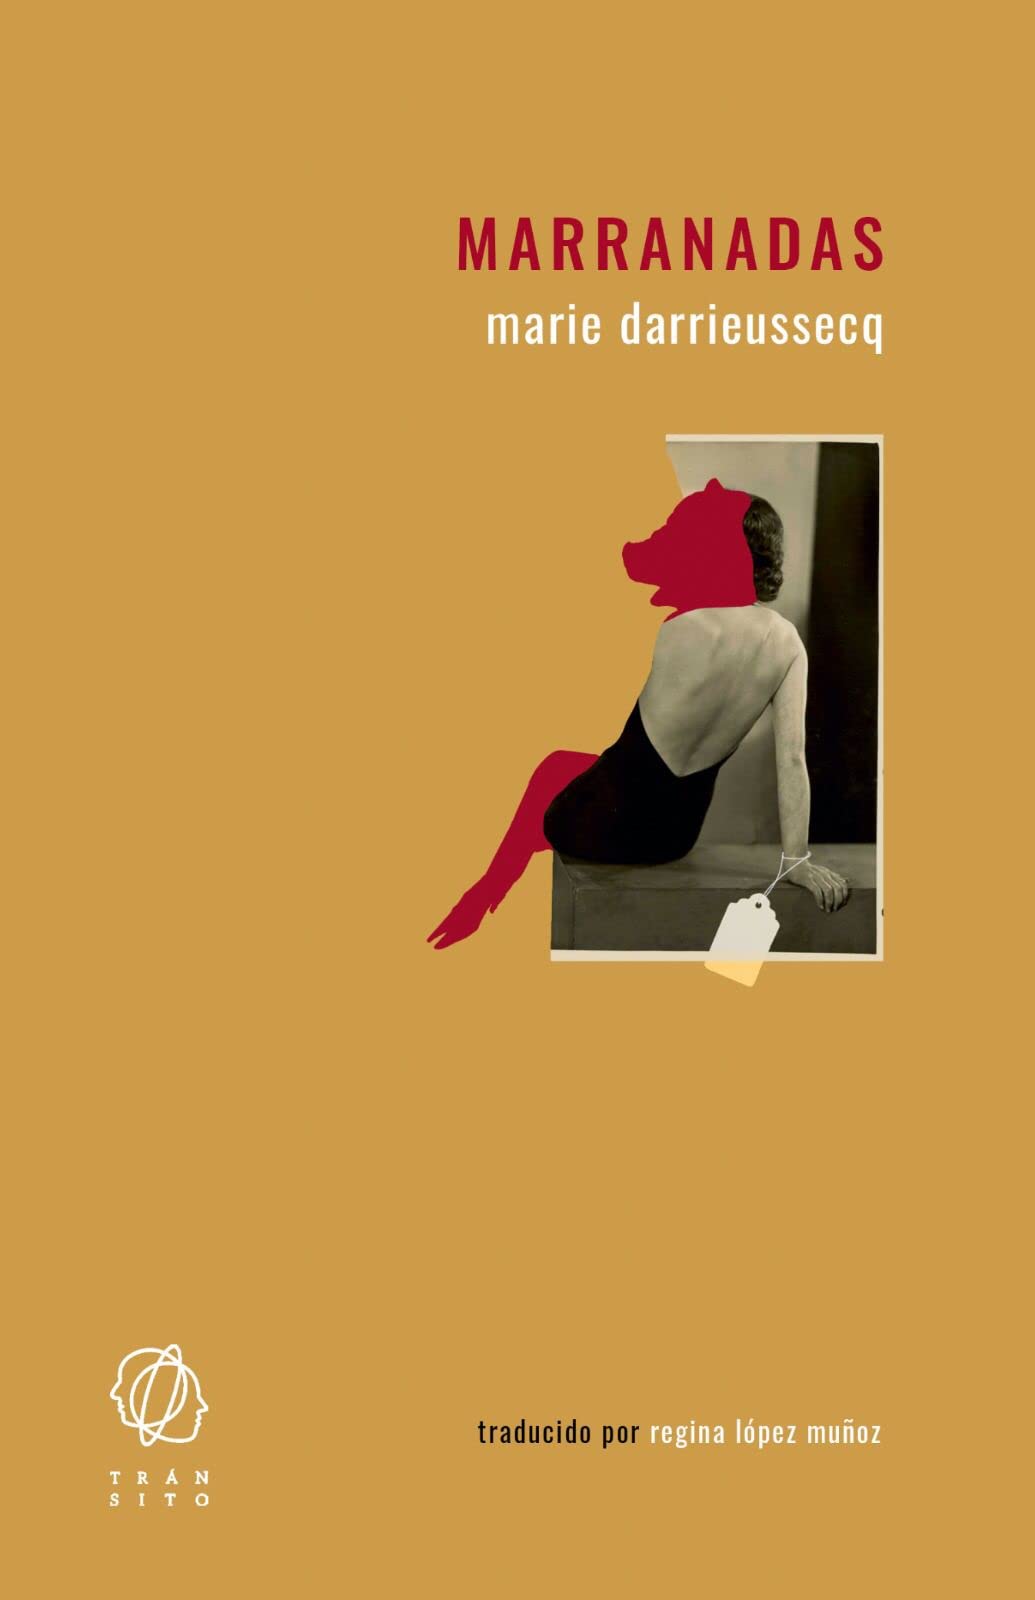 Marranadas, de Marie Darrieussecq